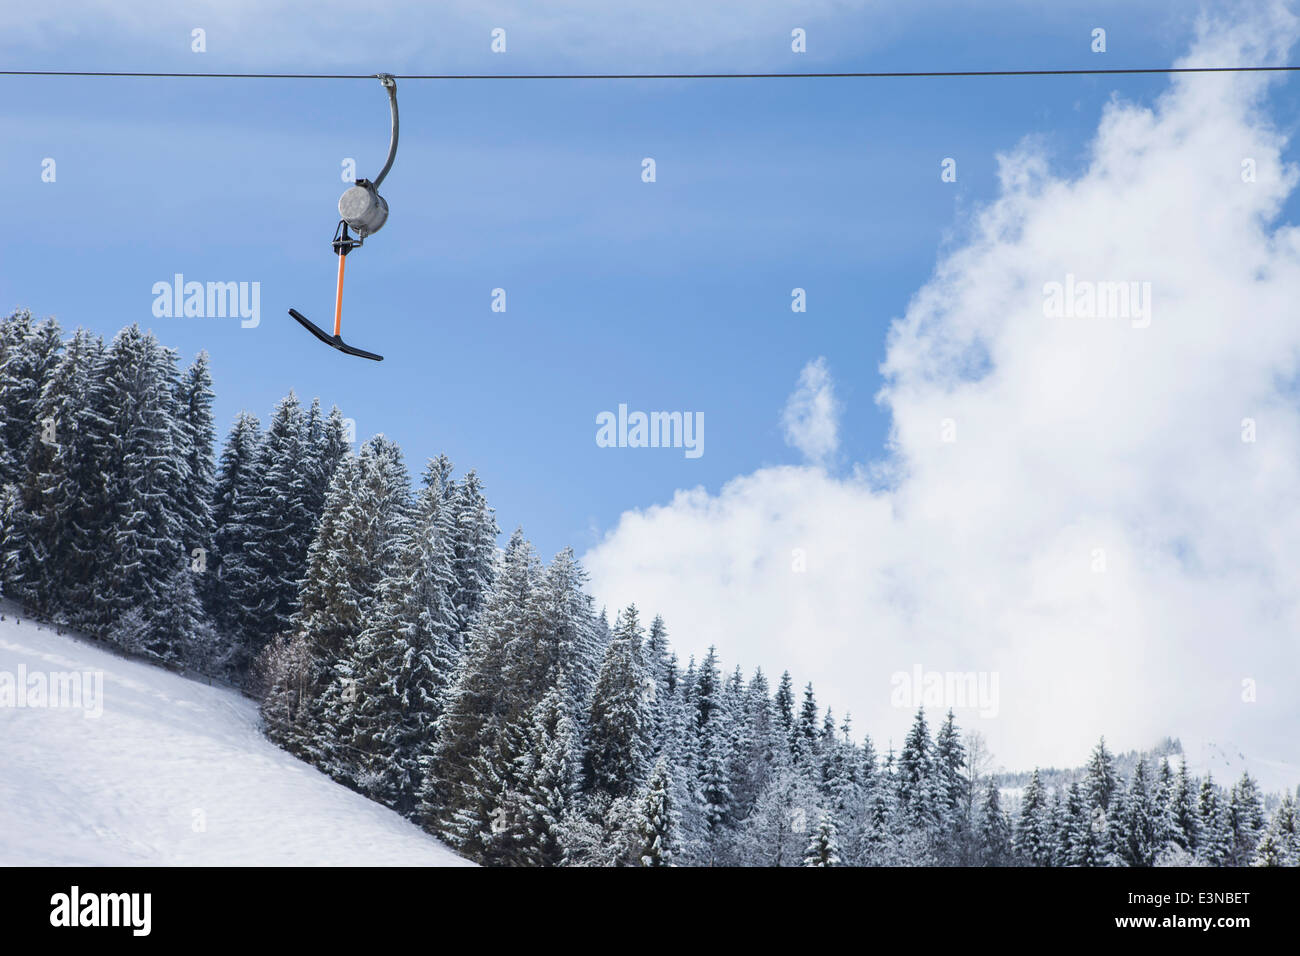 Ski lift contra el cielo nublado durante el invierno Foto de stock